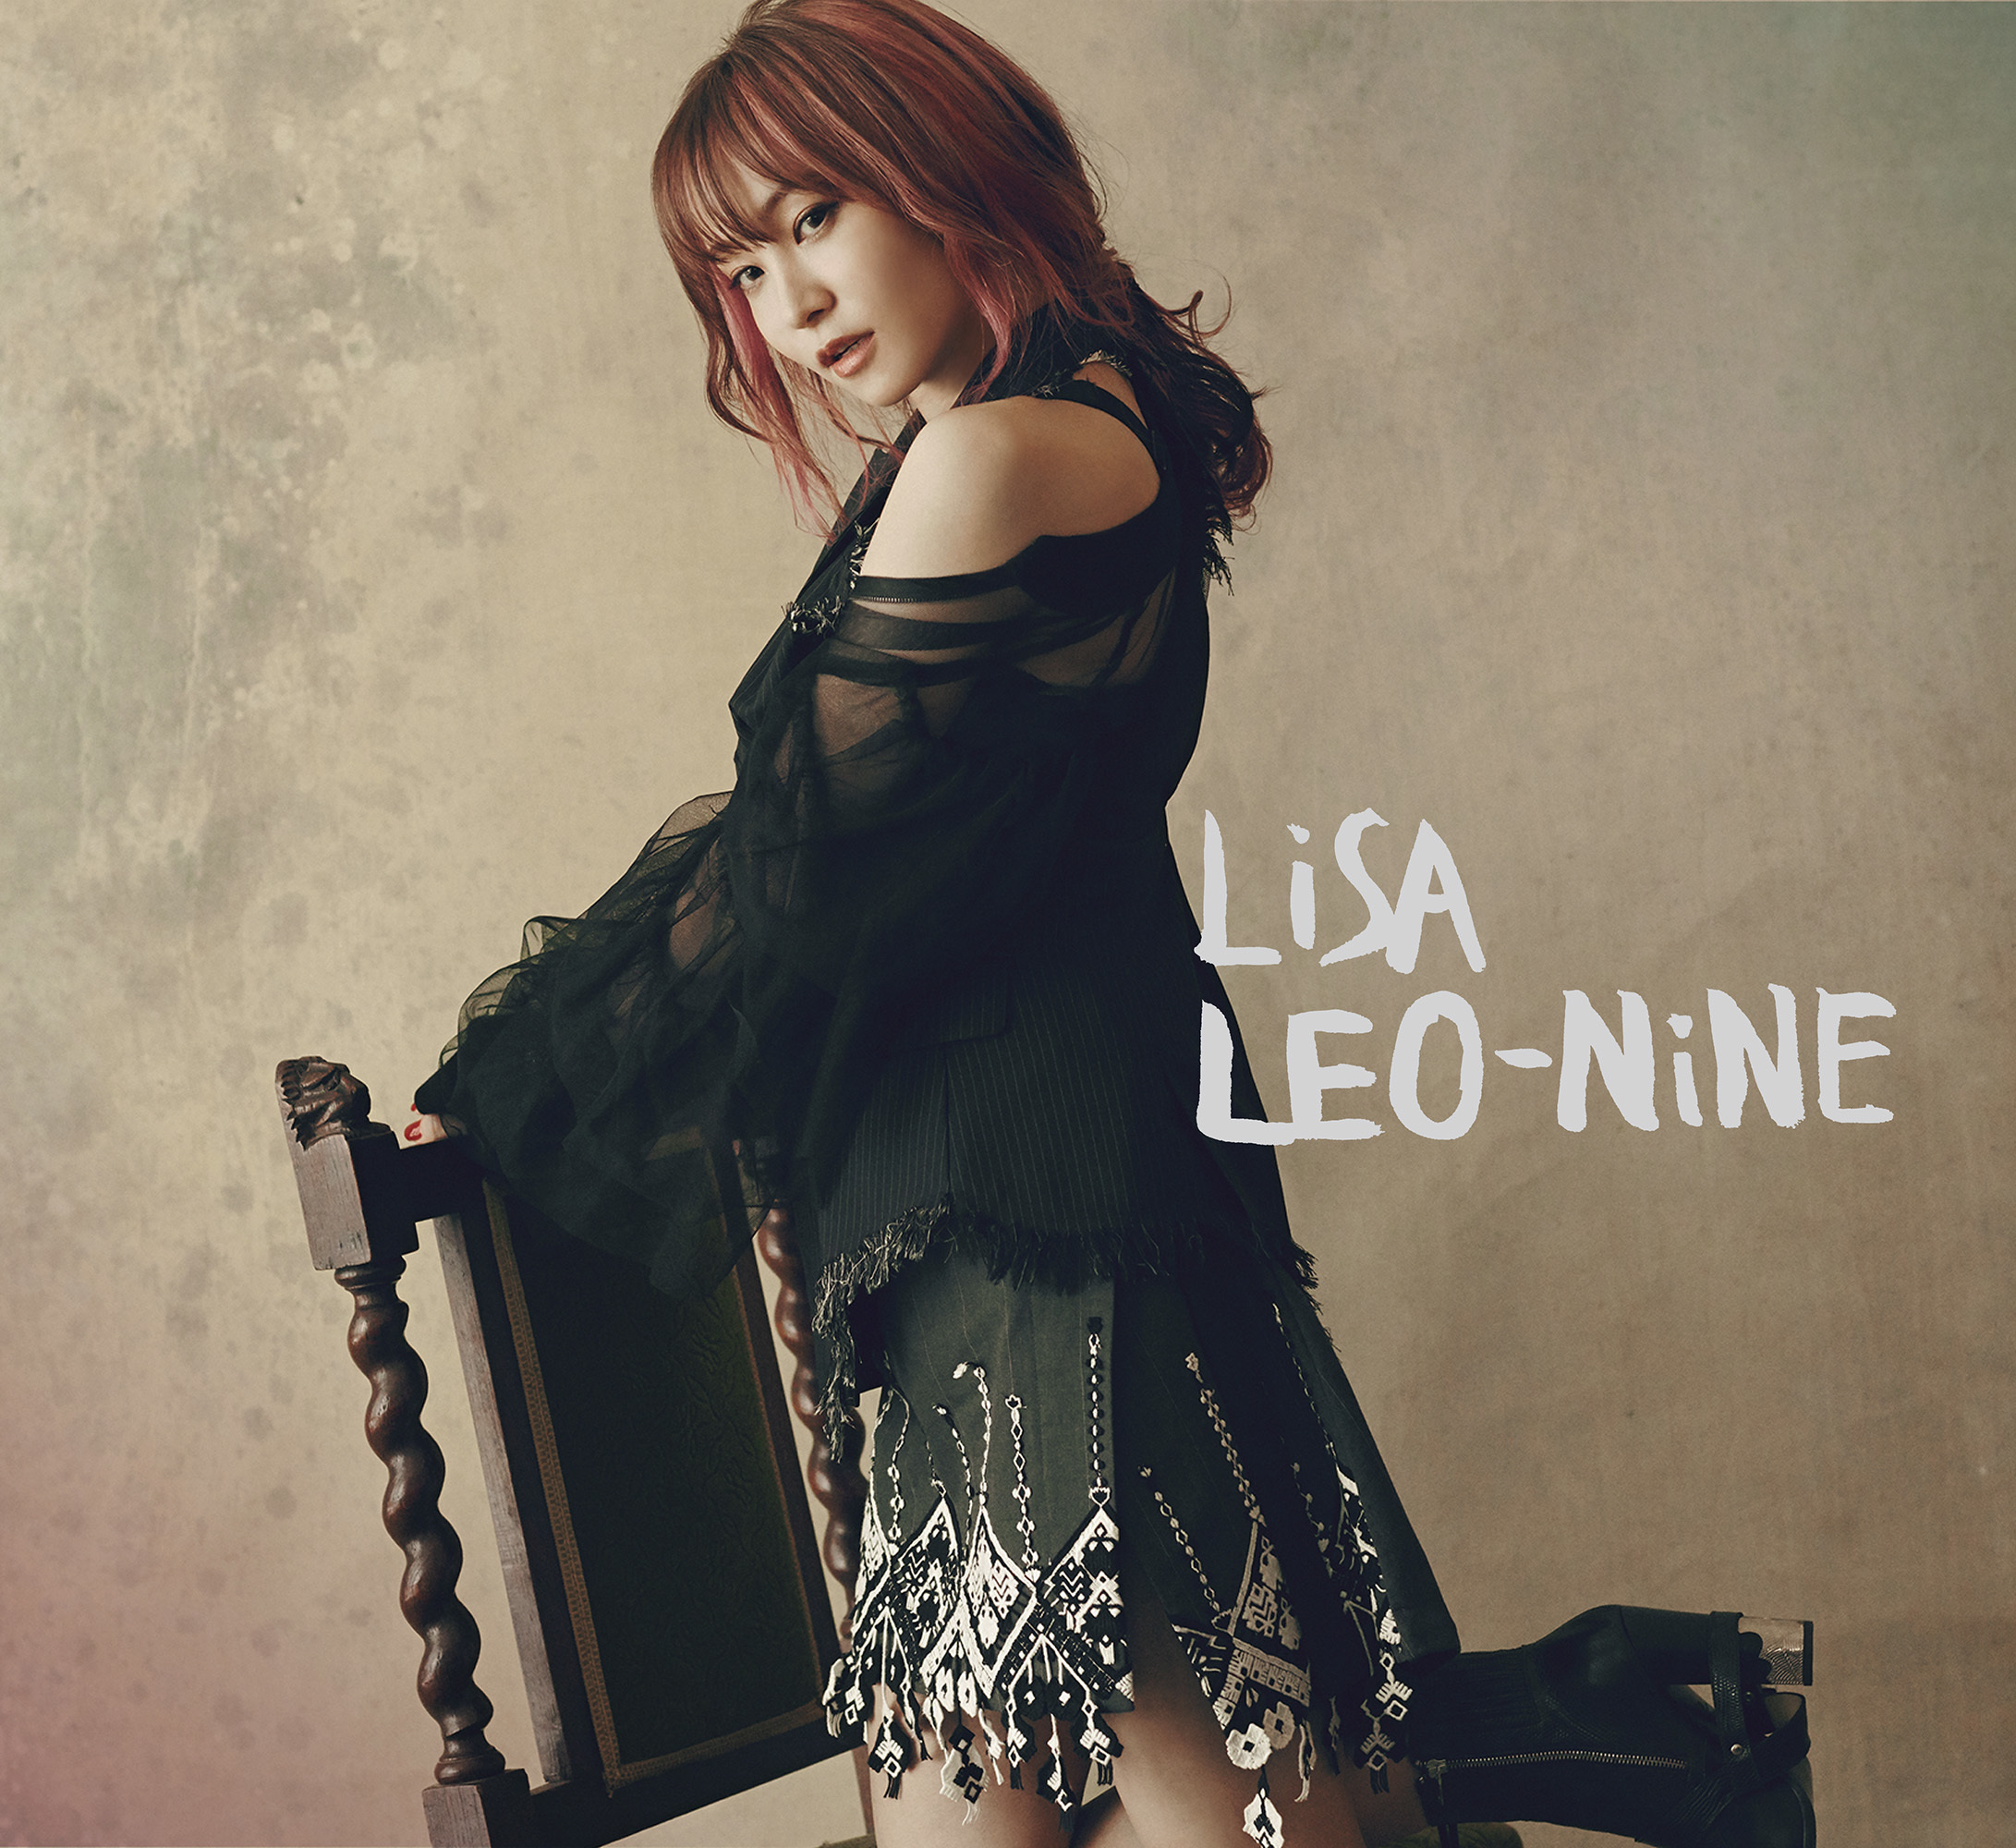 LiSA 5th アルバム「LEO-NiNE」初回生産限定盤 A